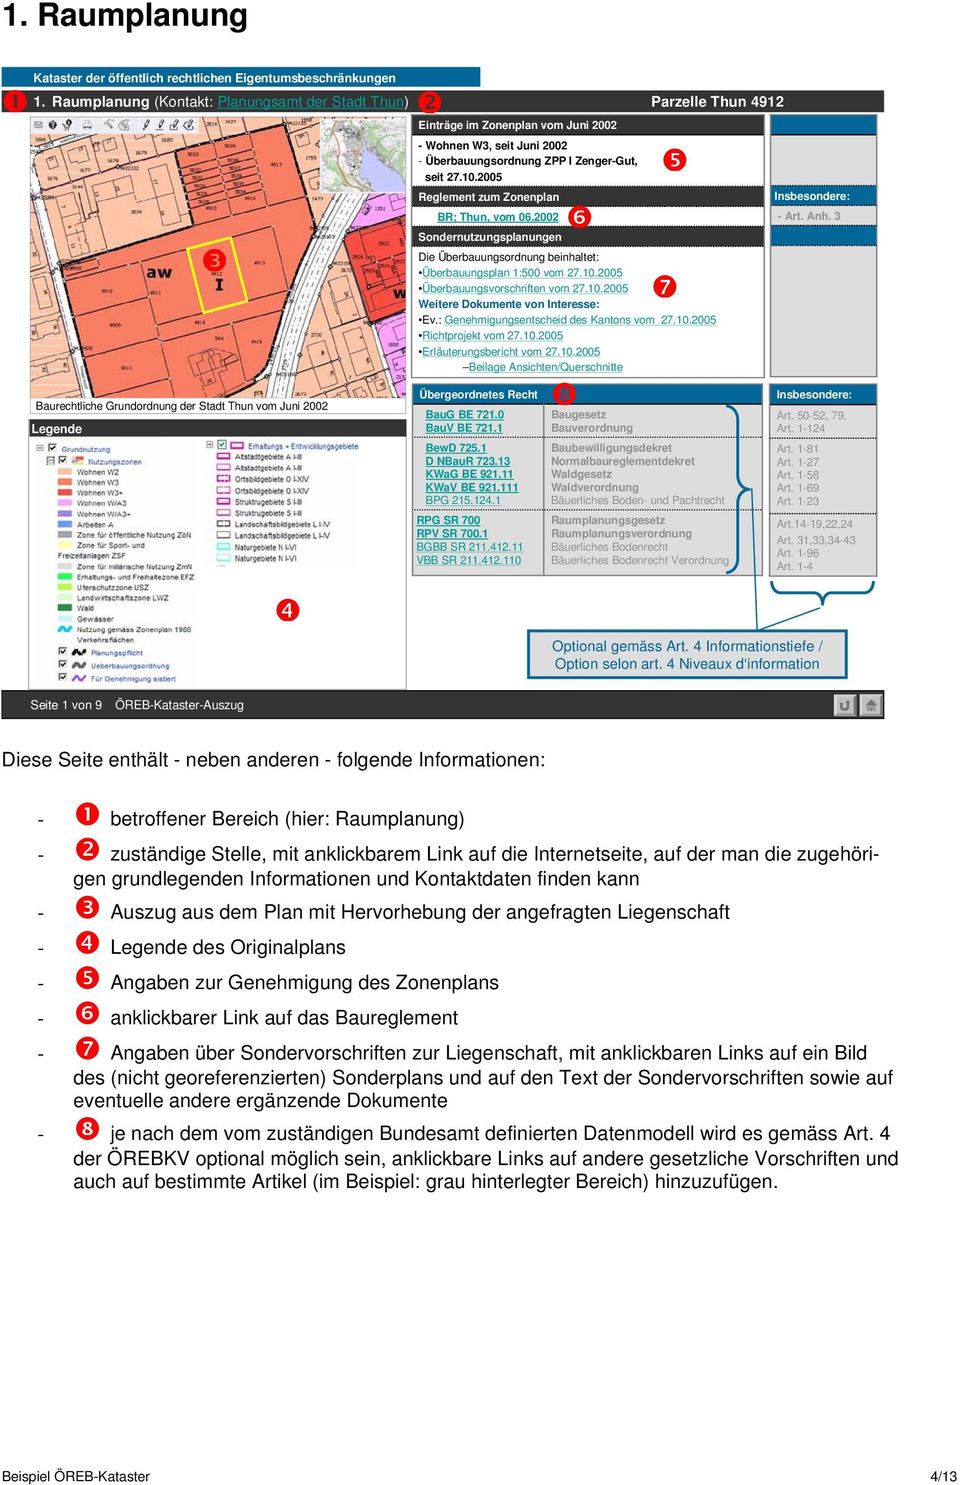 seit Juni 2002 - Überbauungsordnung ZPP I Zenger-Gut, seit 27.10.2005 Reglement zum Zonenplan BR; Thun, vom 06.